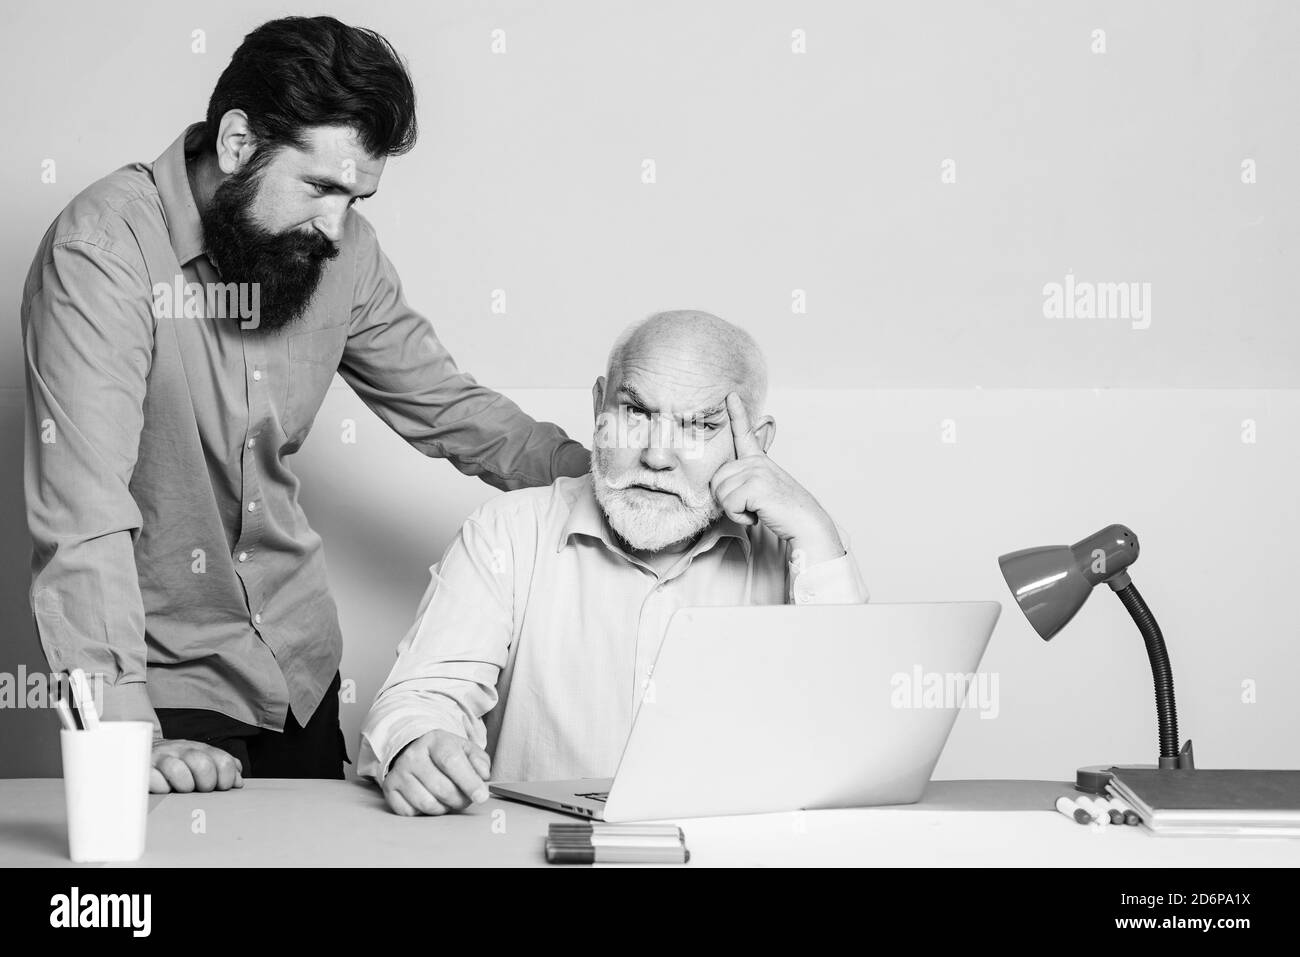 Deux employés de bureau travaillant à l'écran d'un ordinateur portable. Employés de bureau. Deux collègues d'affaires se rencontrent dans un intérieur de bureau moderne et coloré. Banque D'Images